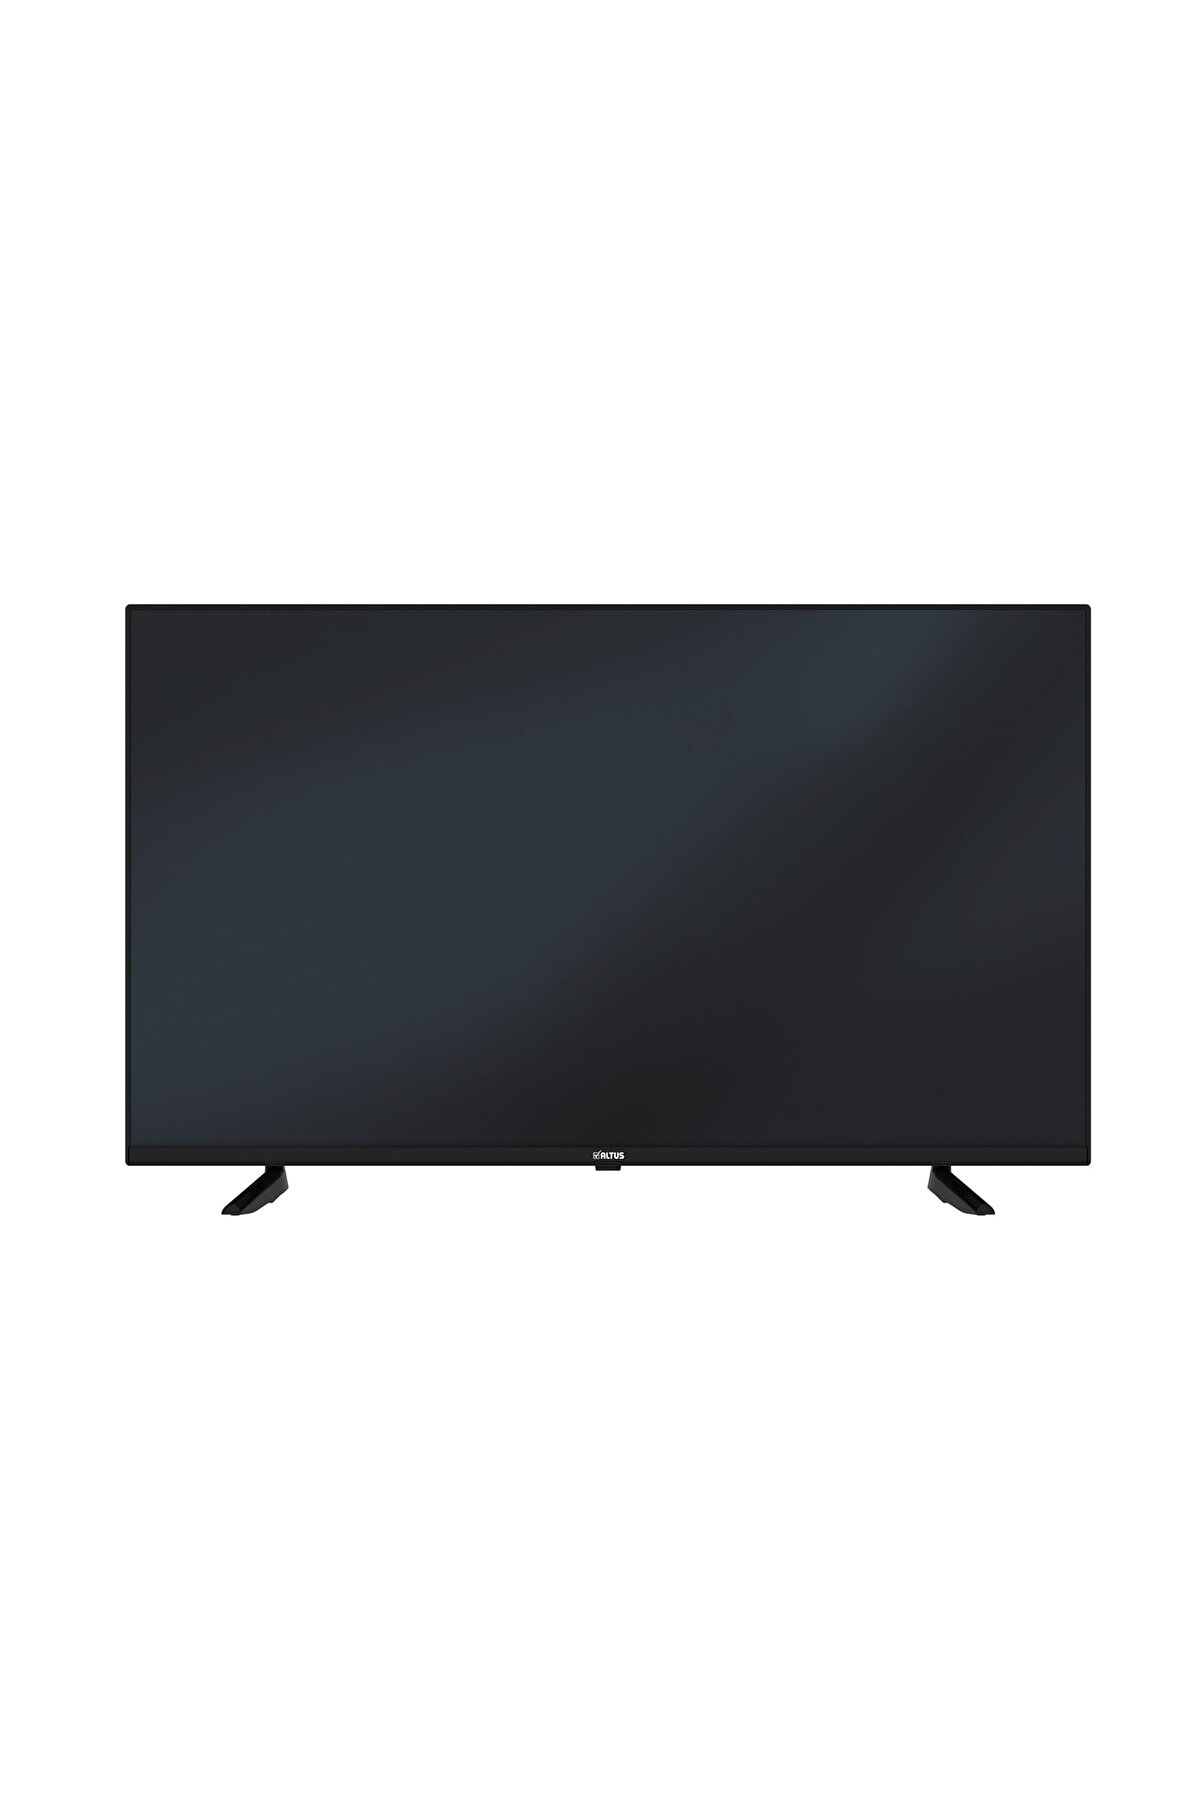 Altus AL50 C 865 5B 50" 127 Ekran Uydu Alıcılı 4K Ultra HD Smart LED TV